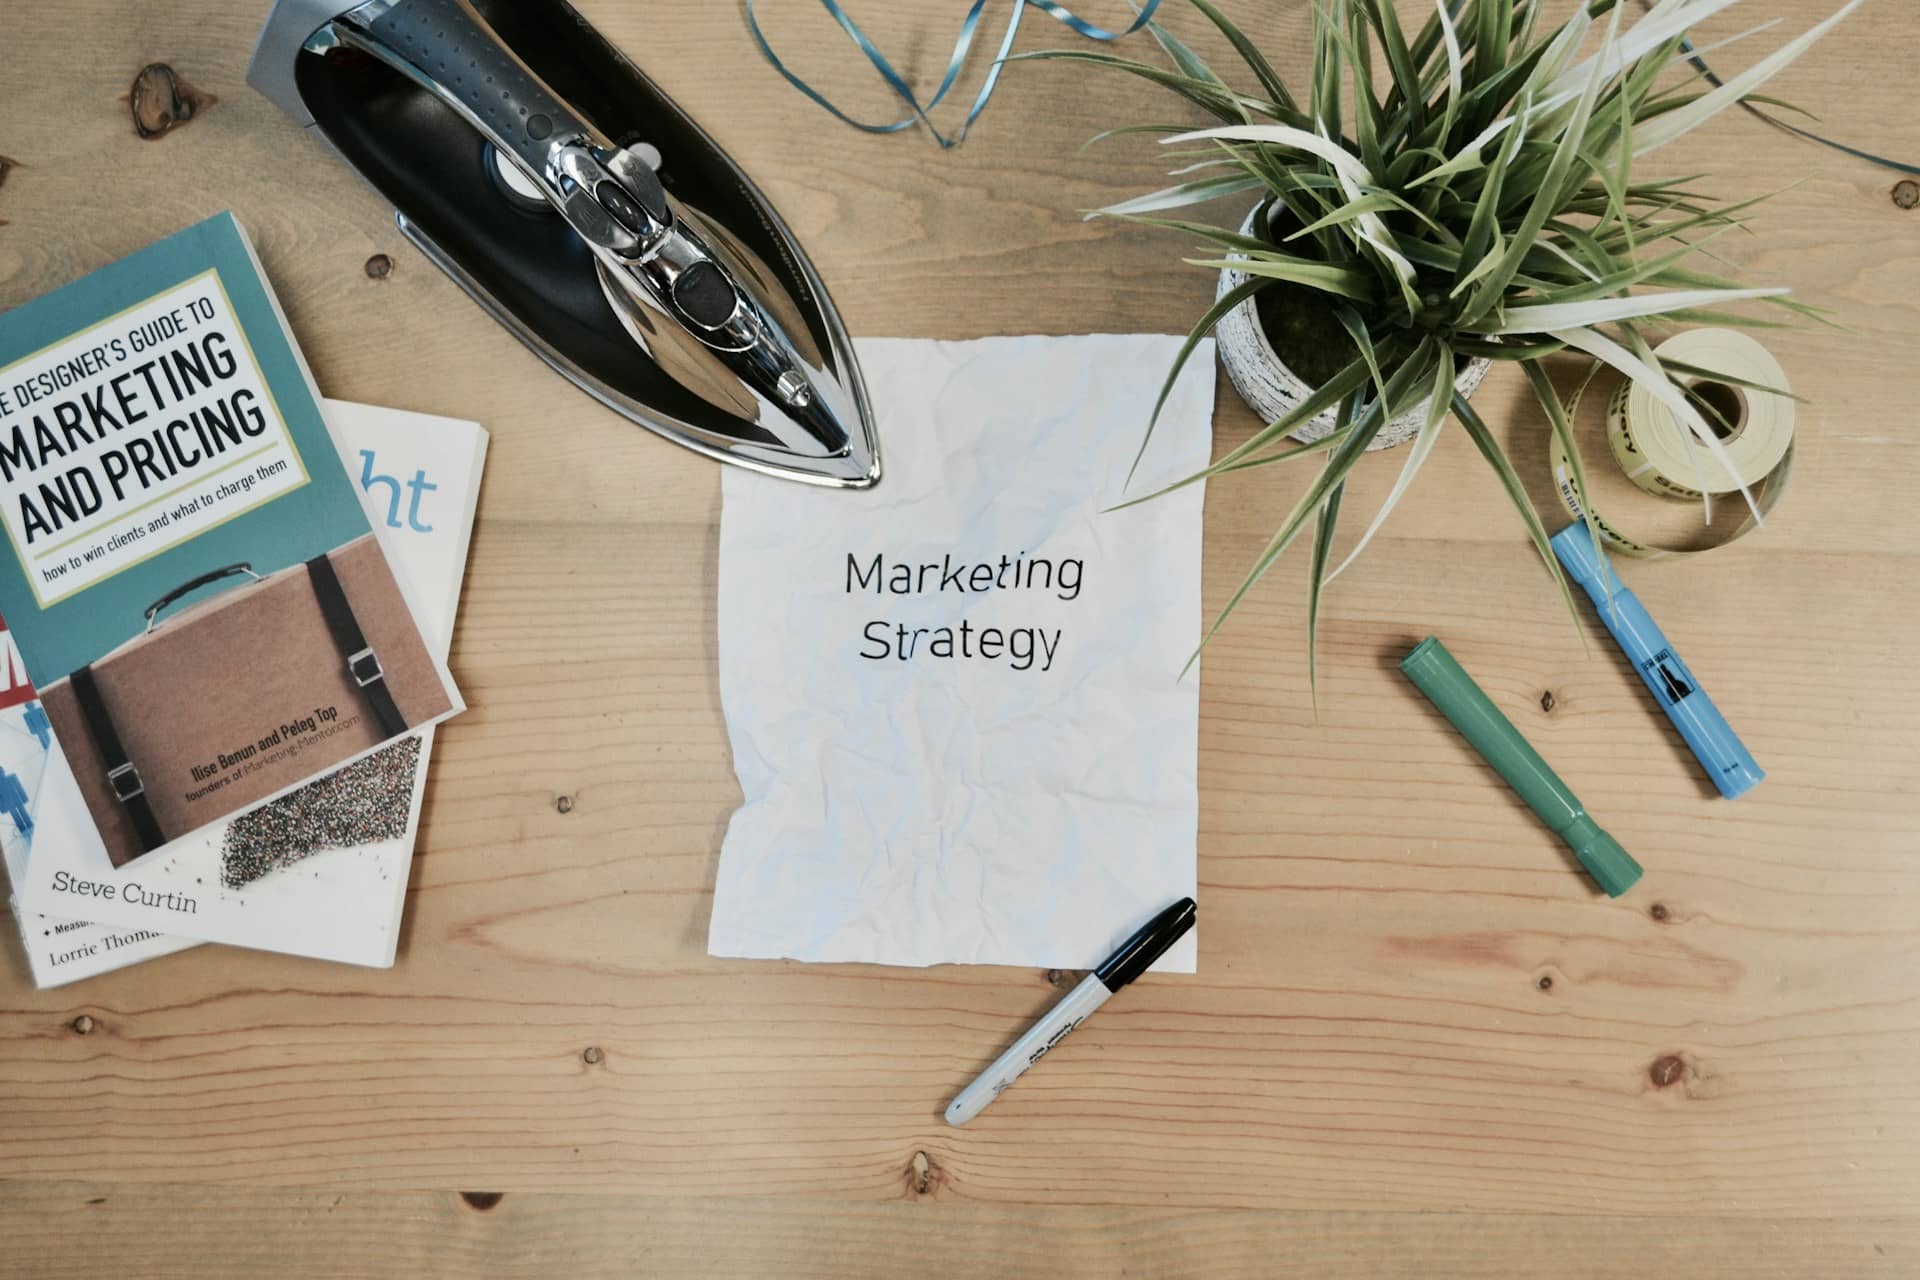 Op deze afbeelding is er een tafel te zien met daarop een papier waar marketing strategie in het engels opstaat, wat mooi past bij het thema marketing in je ondernemersplan.